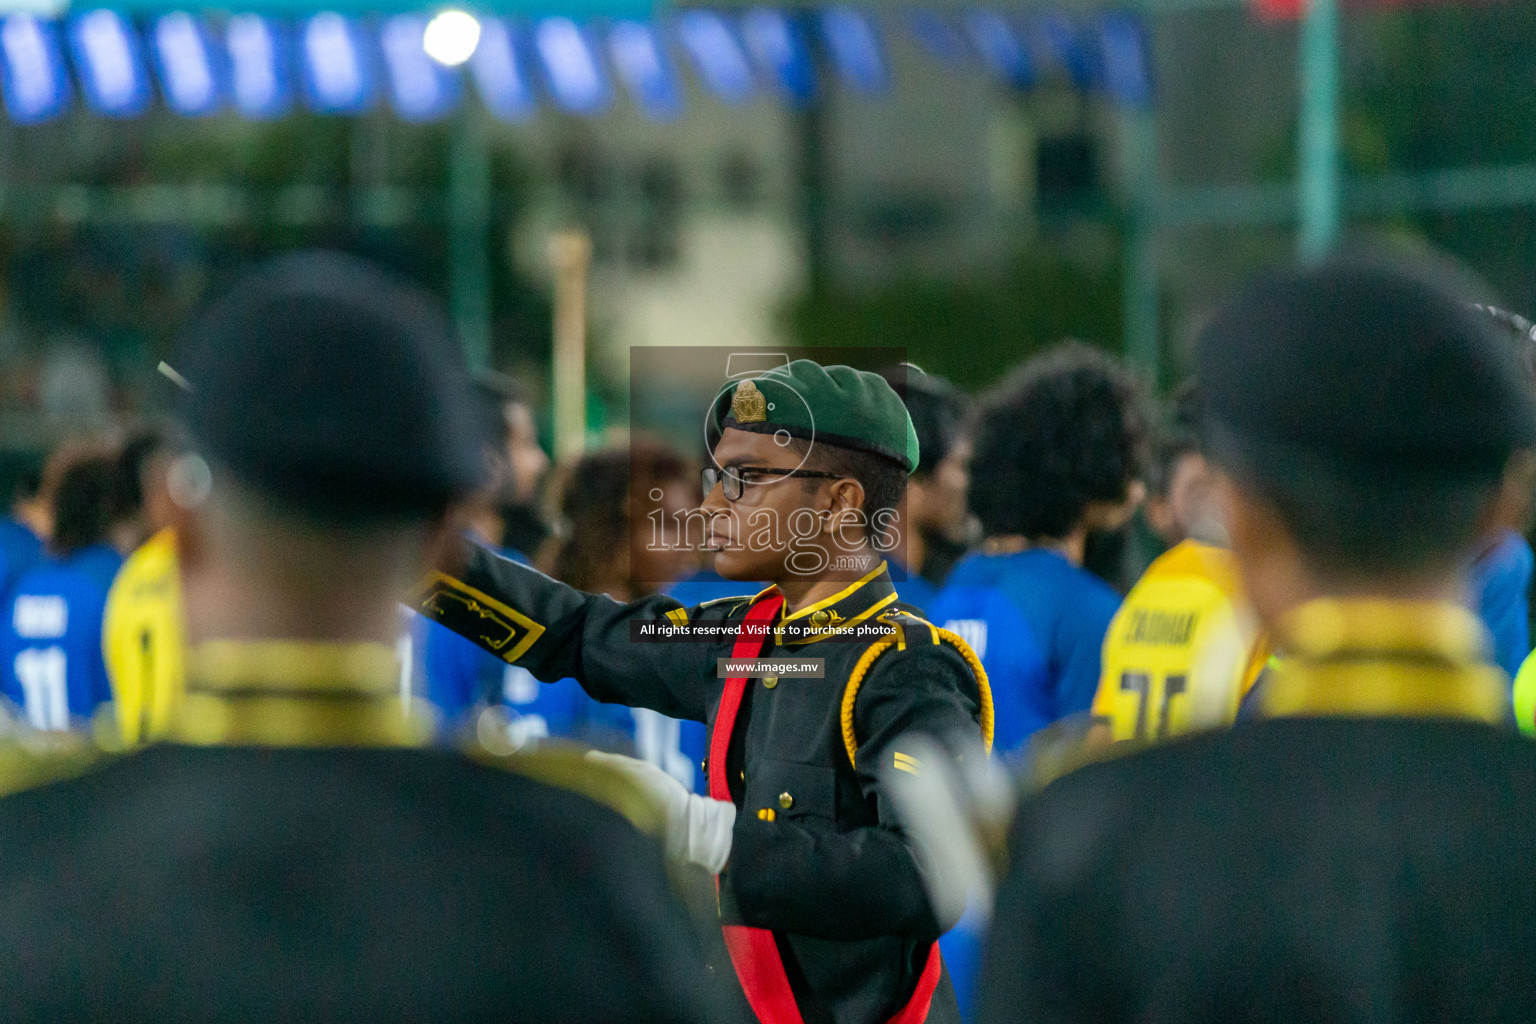 Team Fenaka vs MPL in the Finals of Club Maldives 2022 was held in Hulhumale', Maldives on Saturday, 5th November 2022. Photos: Nausham Waheed, Hassan Simah, Mohamed Mahfooz Moosa / images.mv